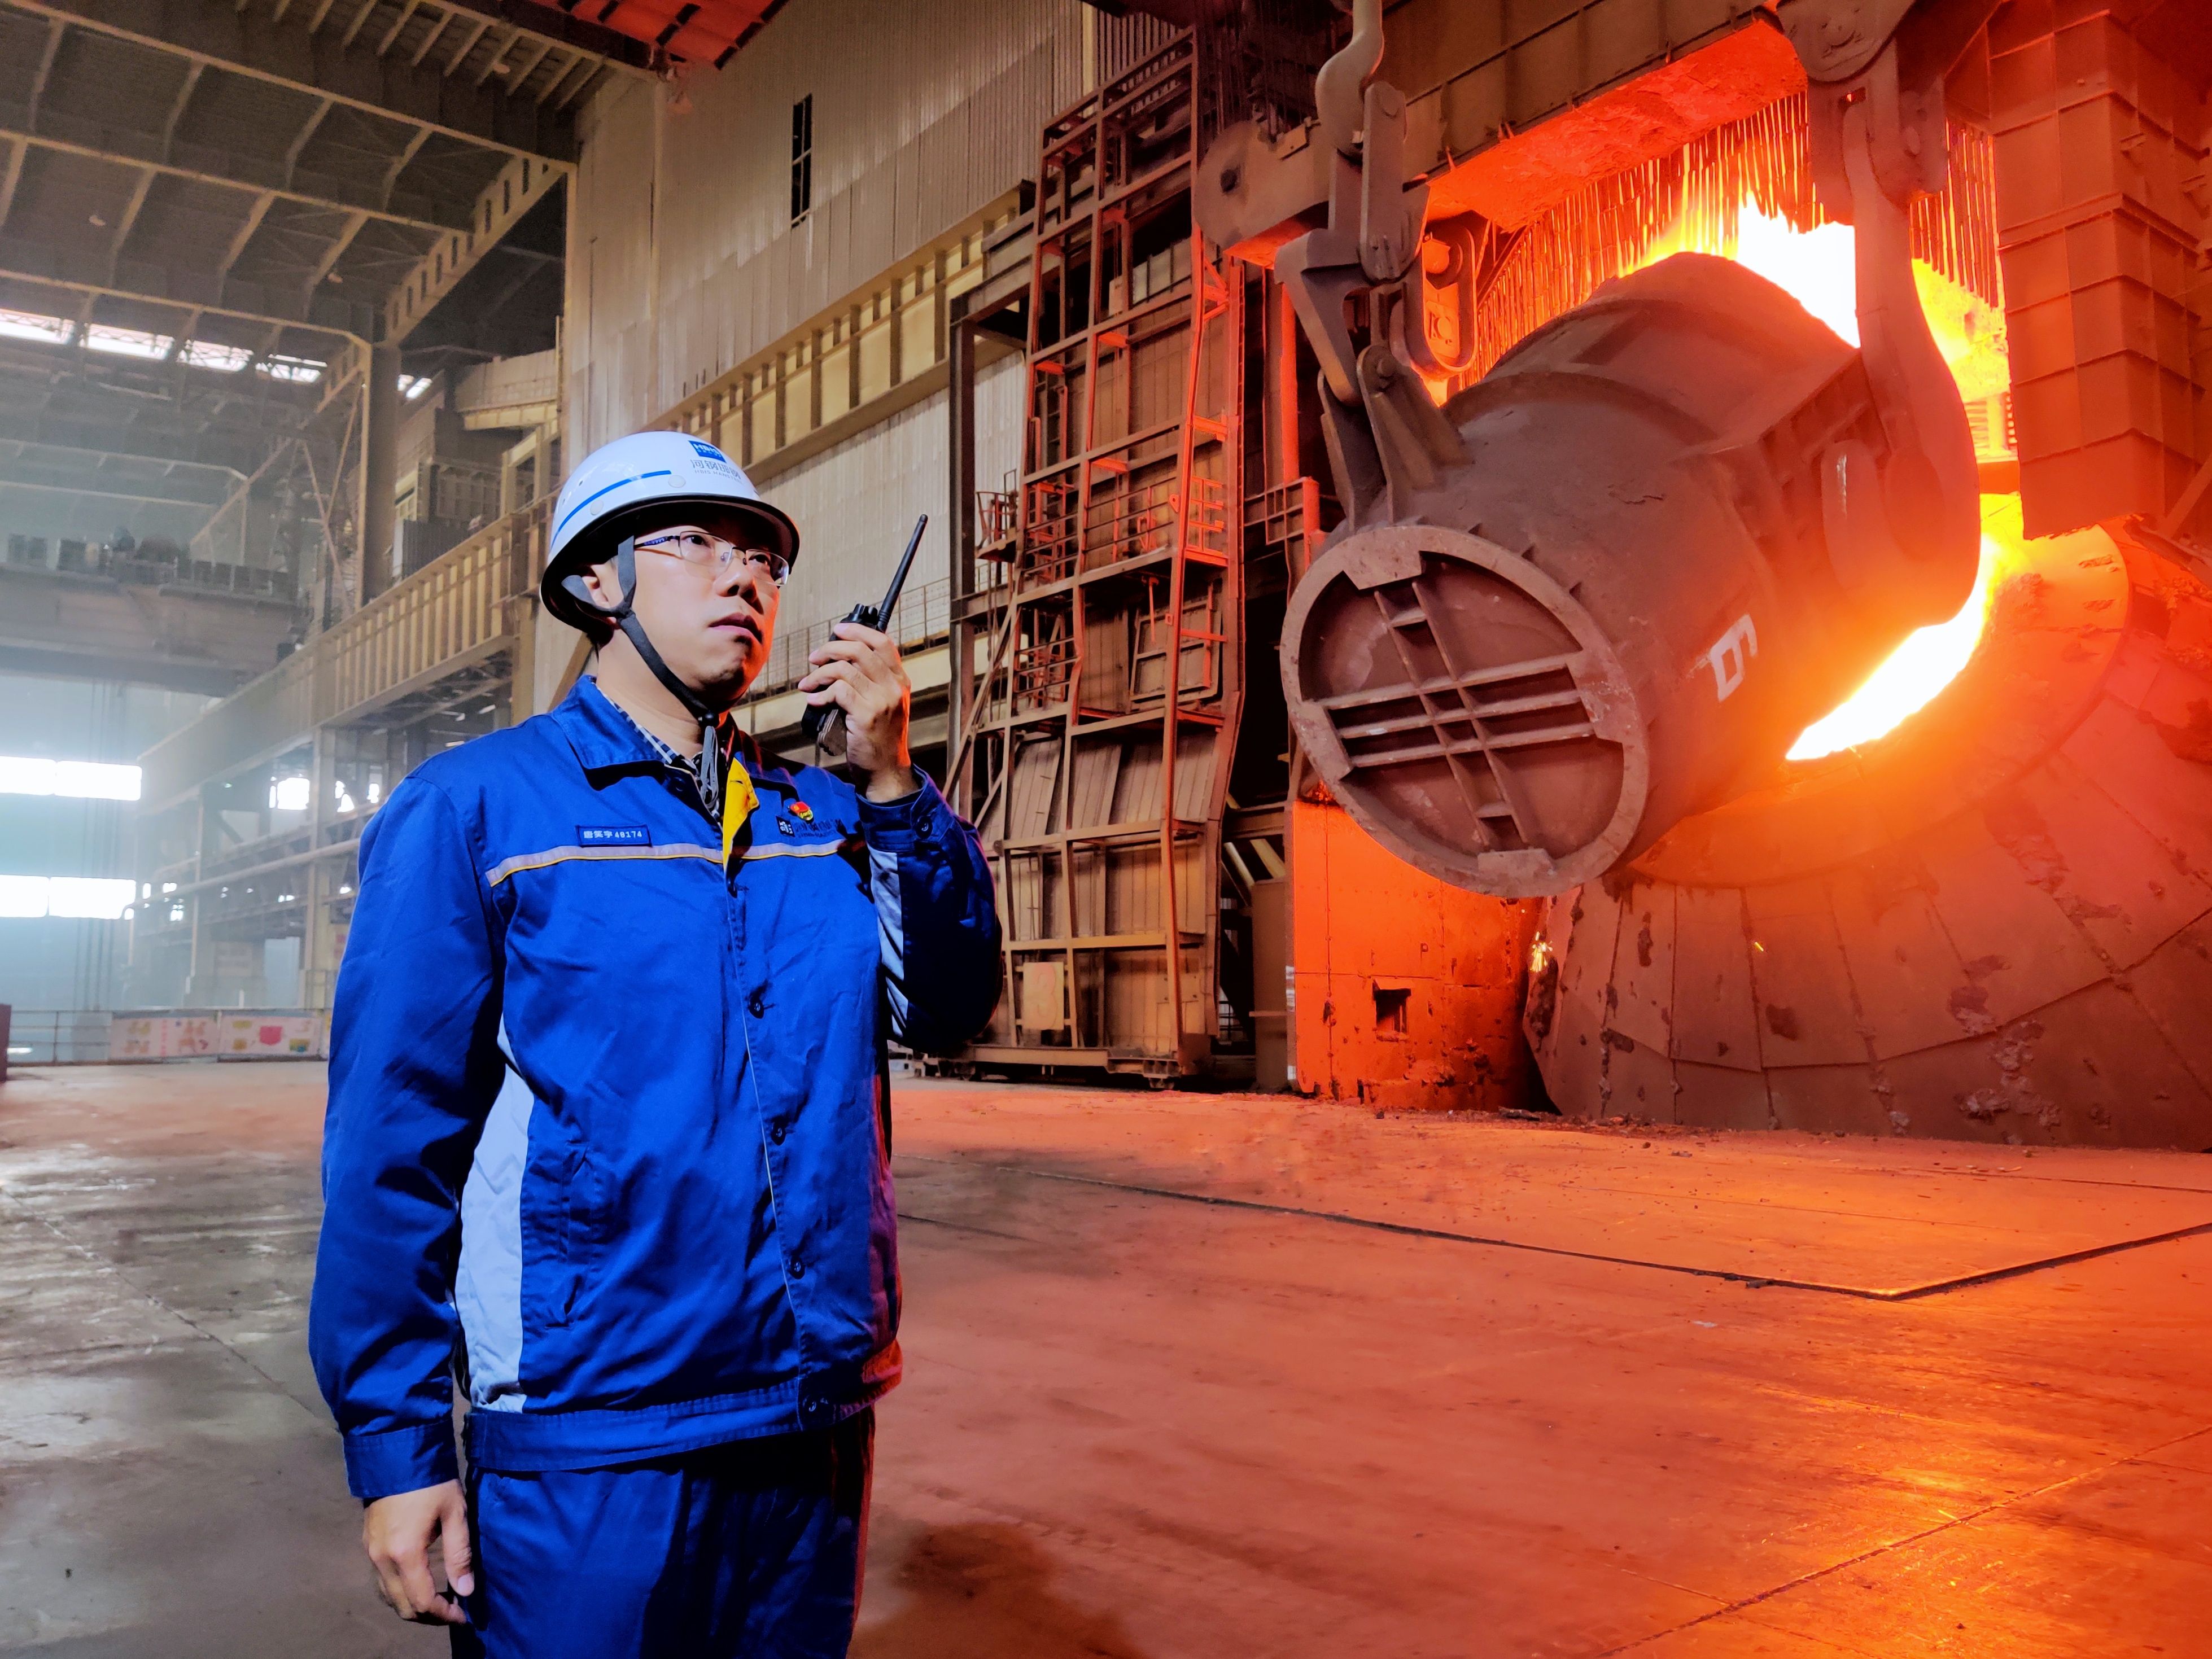 河钢集团邯钢公司邯宝炼钢厂转炉车间在炼制精品钢材。吴兆军摄